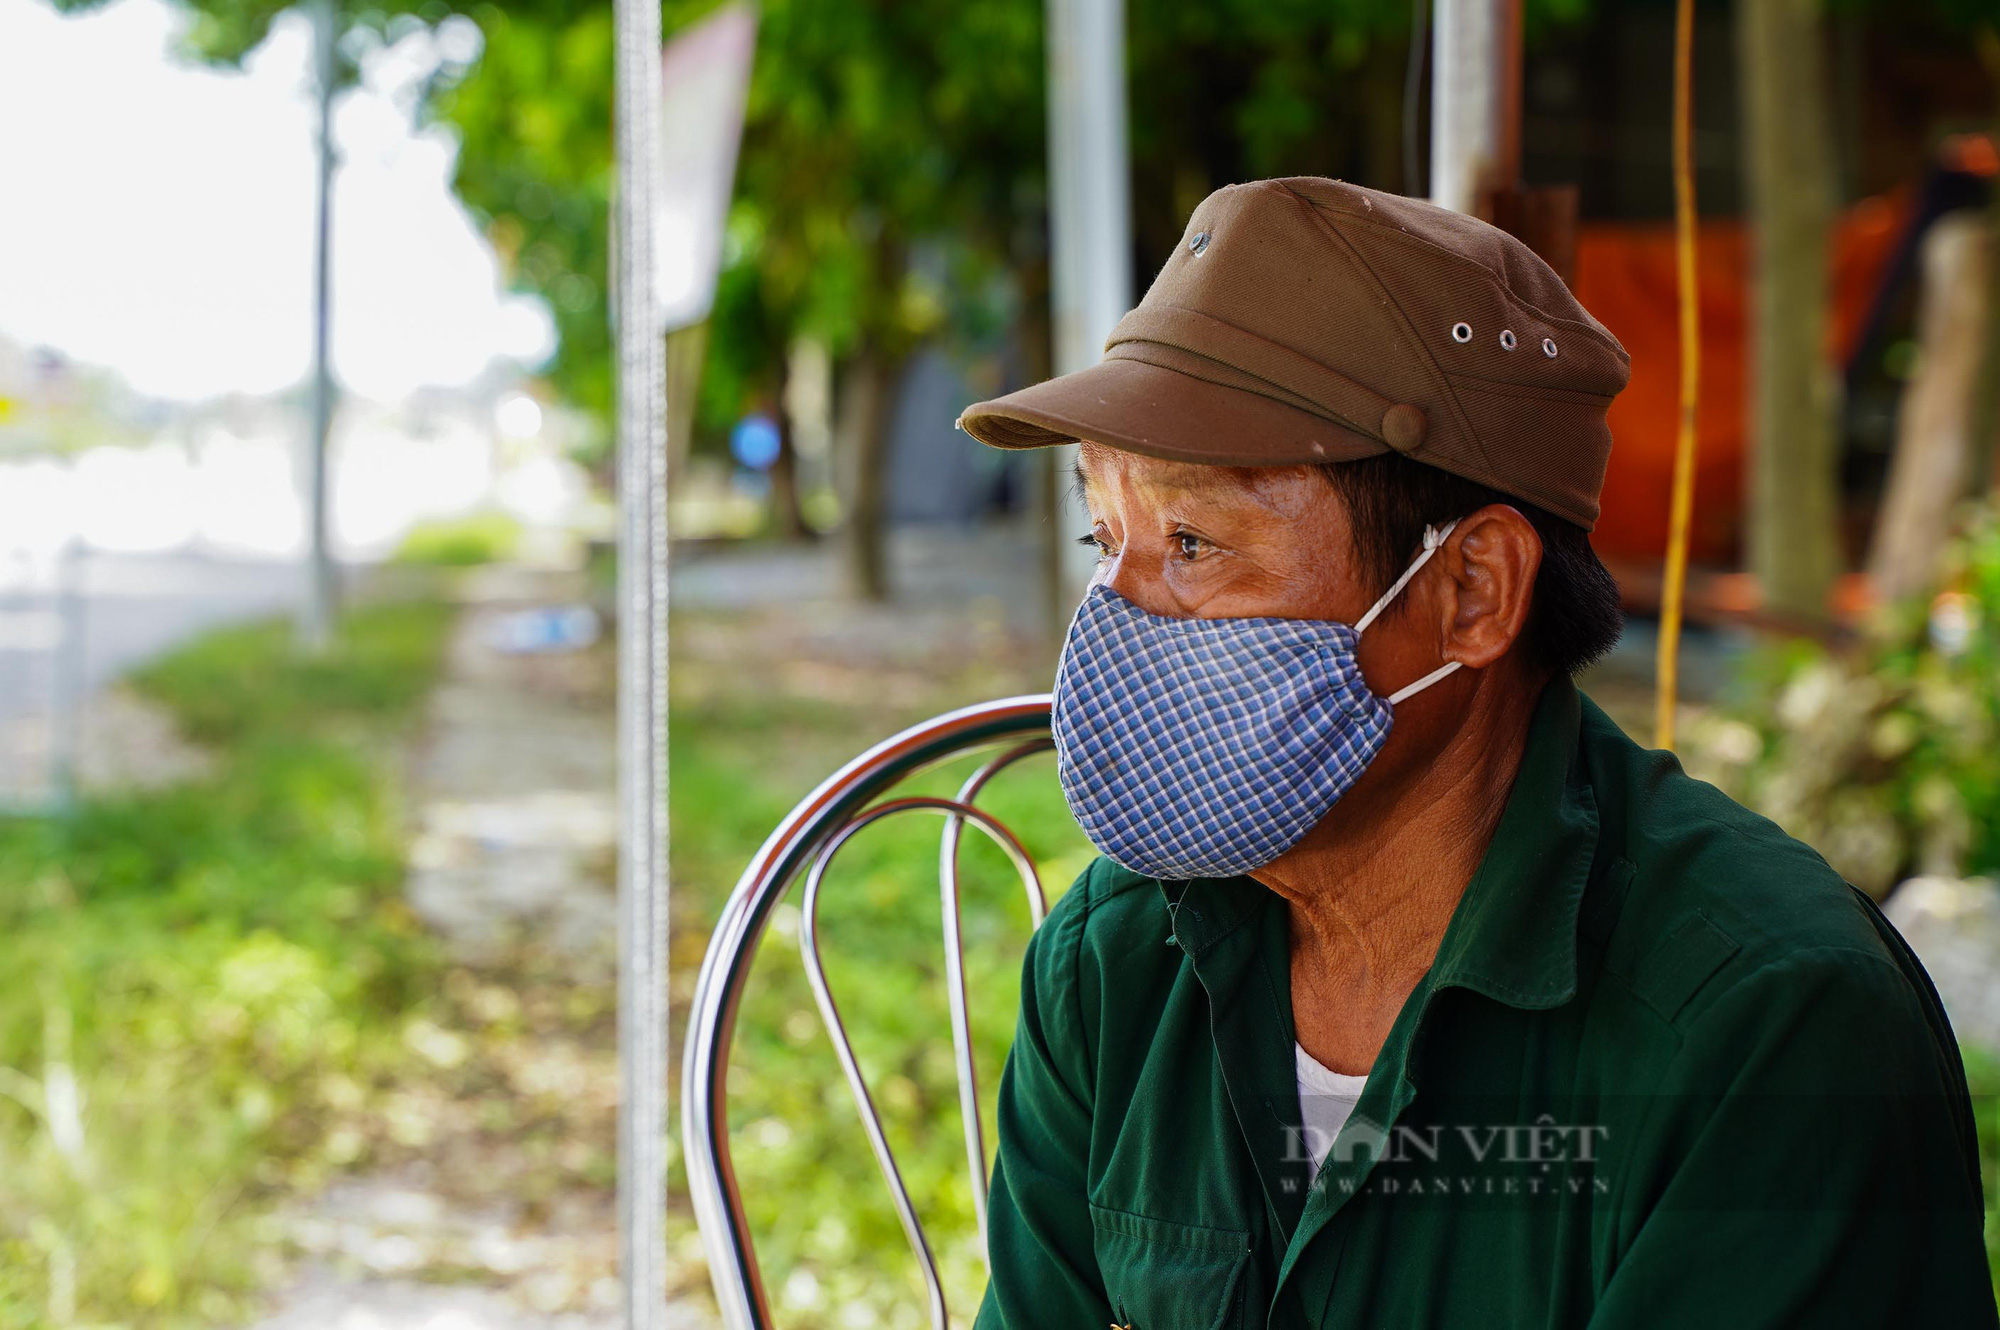 Toàn cảnh 1 thôn hơn 2.000 dân của Hà Nội bị cách ly y tế - Ảnh 10.